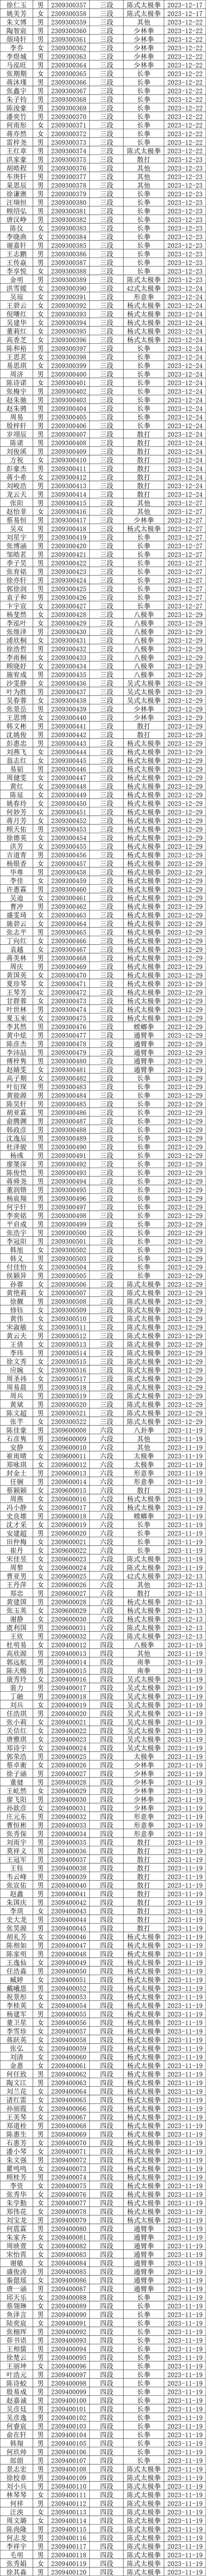 《中国武术段位制》2023年度上海市晋段人员段位号汇总表